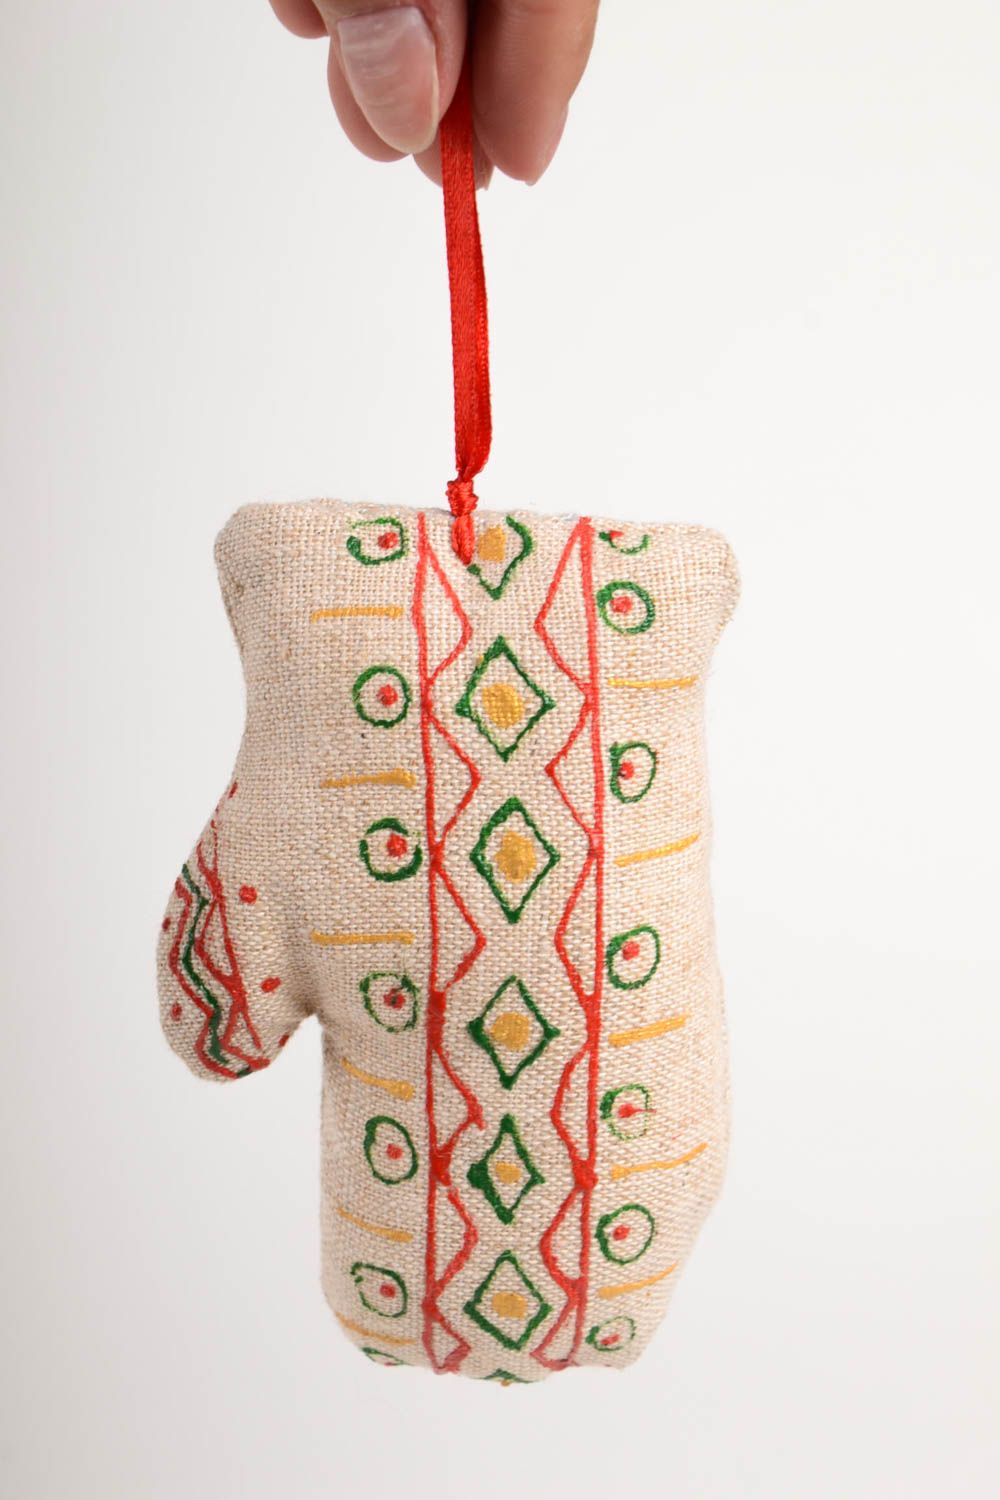 Textil Spielzeug handmade Deko Anhänger Designer Geschenk Deko zum Aufhängen foto 3